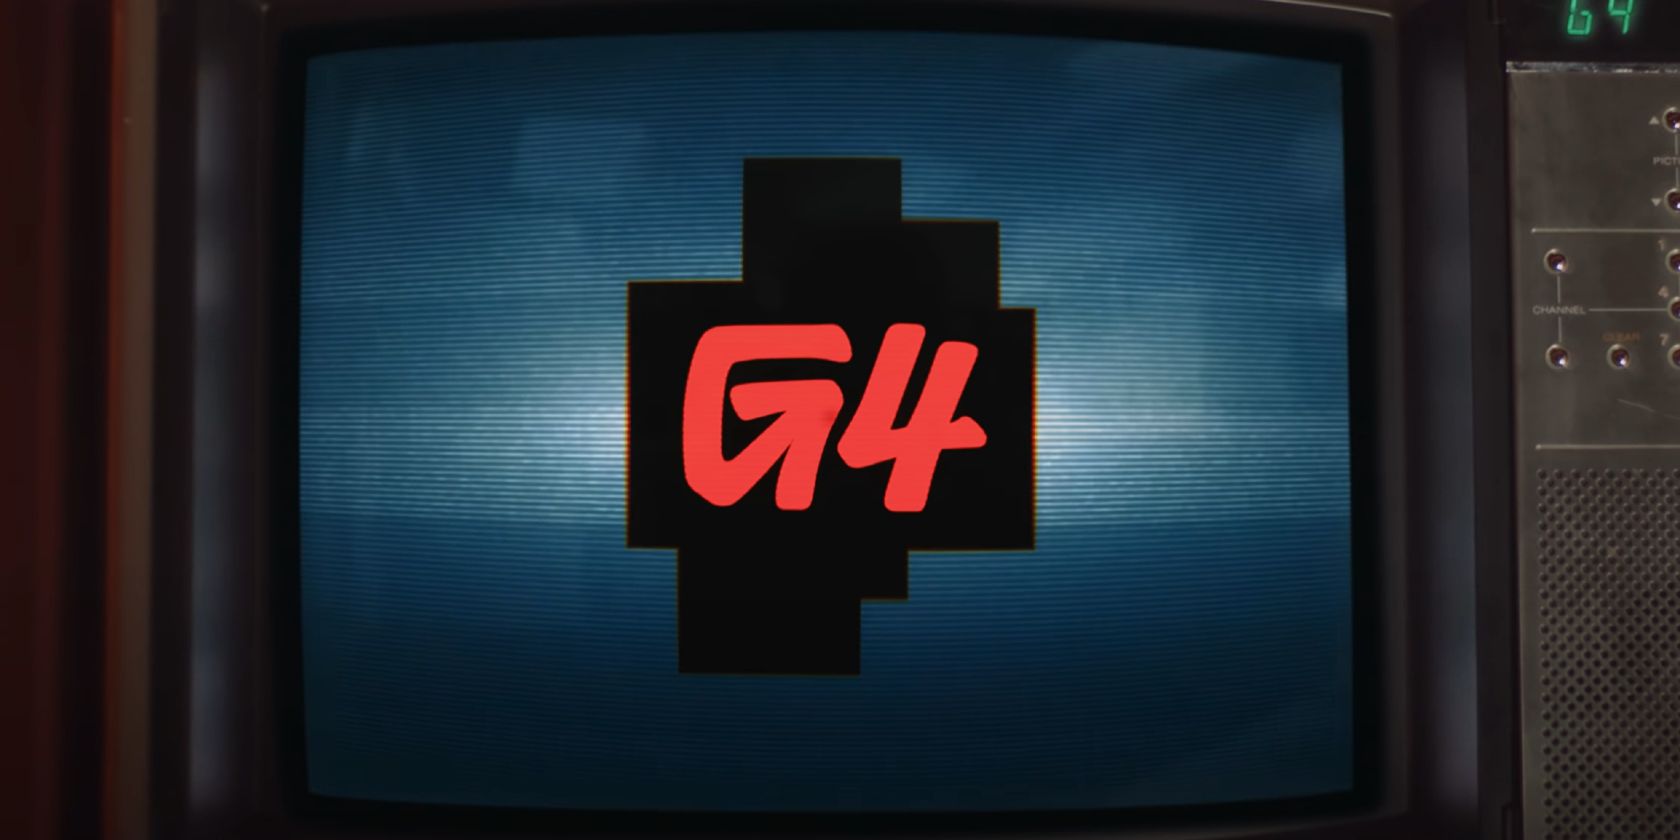 G4 TV Logo banner on TV